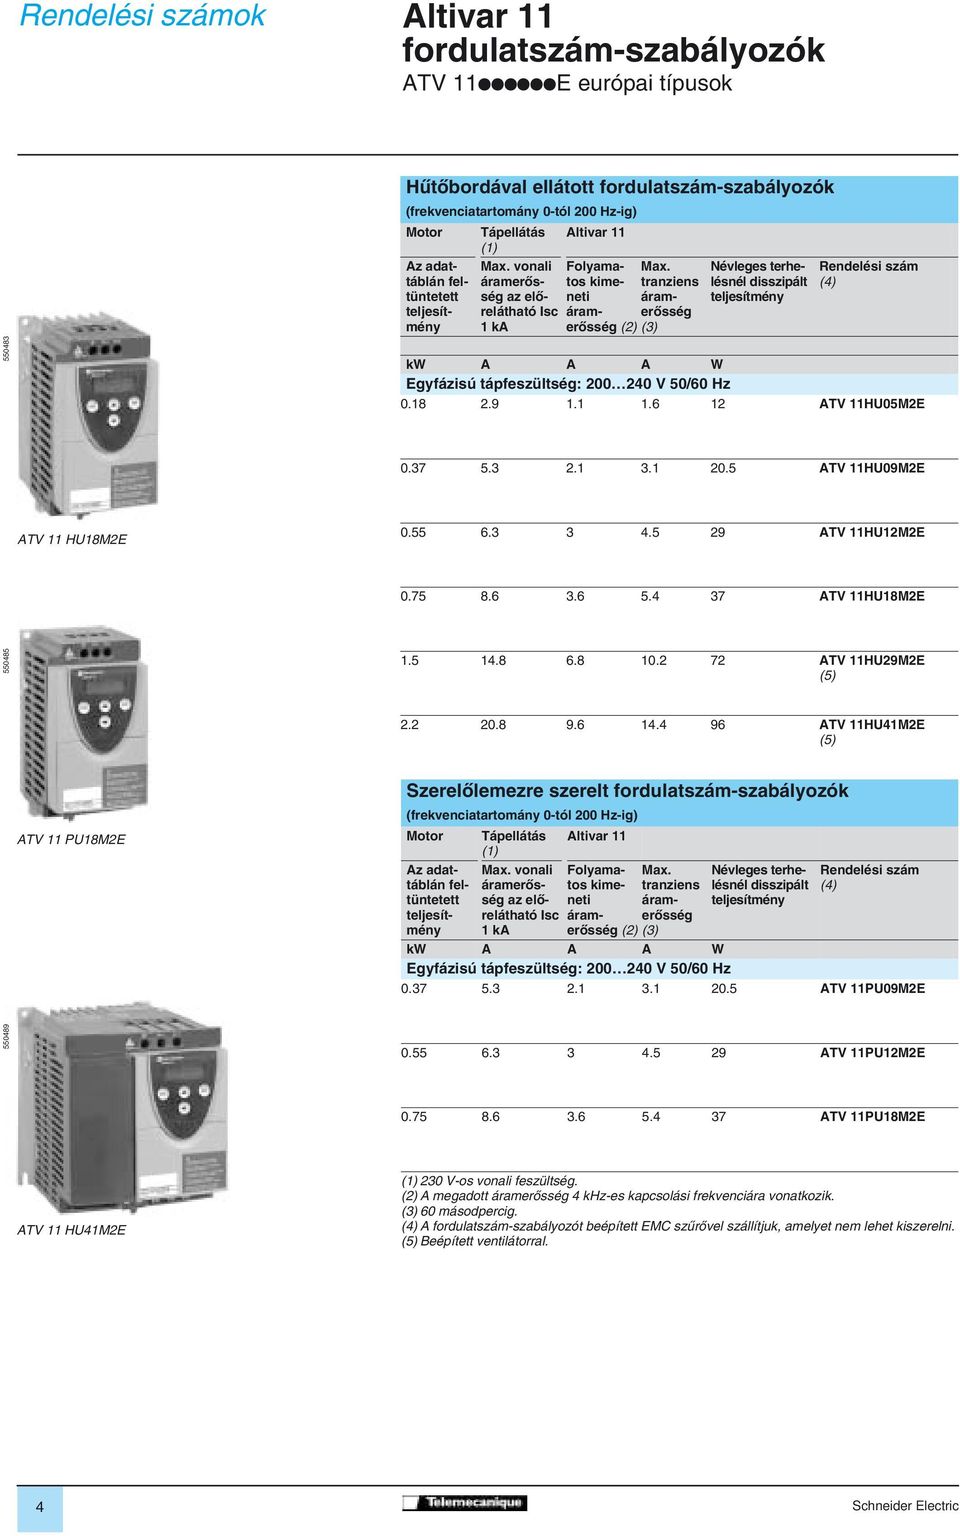 tranziens áramerôsség (3) Névleges terhelésnél disszipált teljesítmény Rendelési szám (4) kw A A A W Egyfázisú tápfeszültség: 200 240 V 50/60 Hz 0.8 2.9..6 2 ATV HU05M2E 0.37 5.3 2. 3. 20.5 ATV HU09M2E ATV HU8M2E 0.